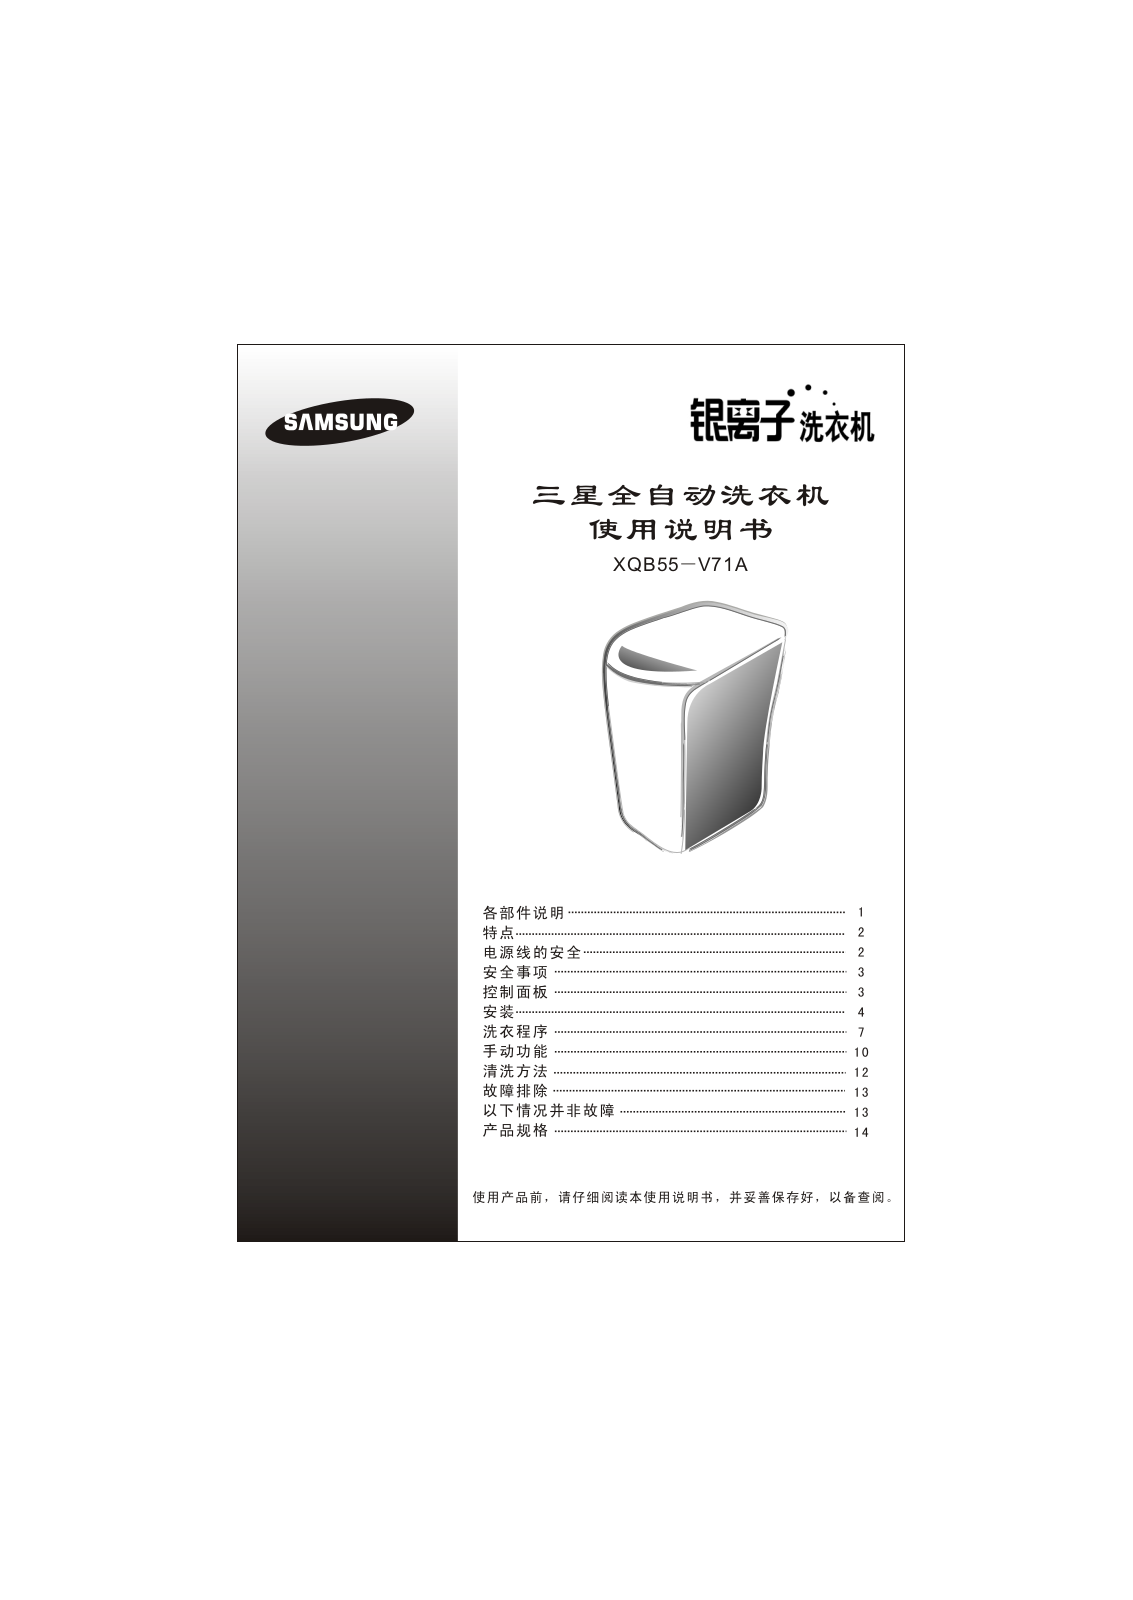 Samsung XQB55-V71A Manual